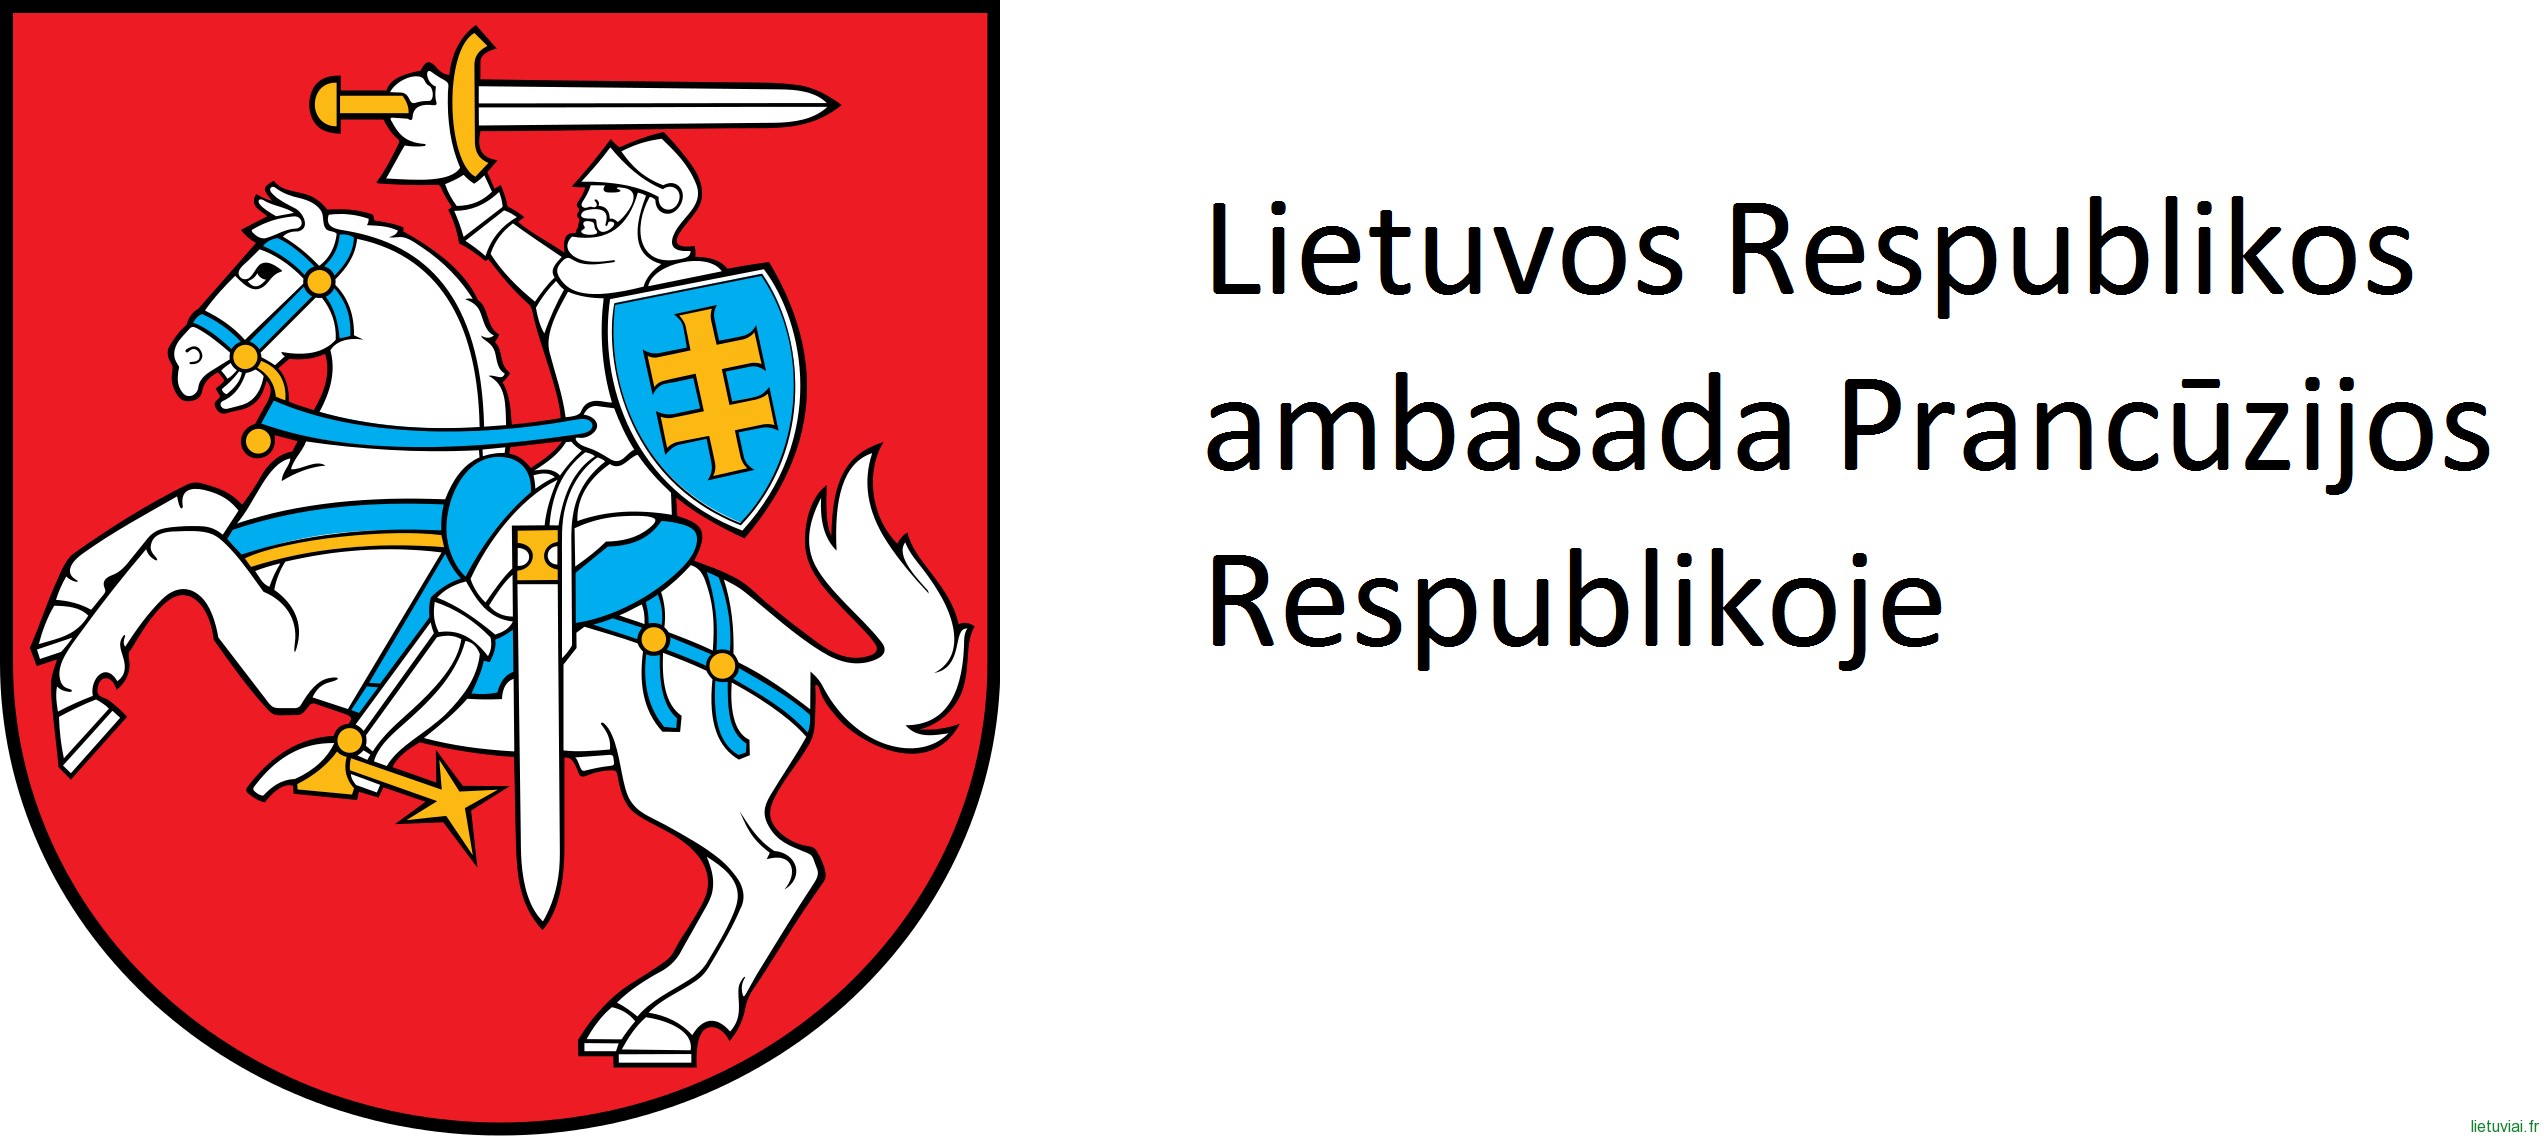 Lietuvos Respublikos ambasada Prancūzijos Respublikoje skelbia atranką užimti 2 sekretorių